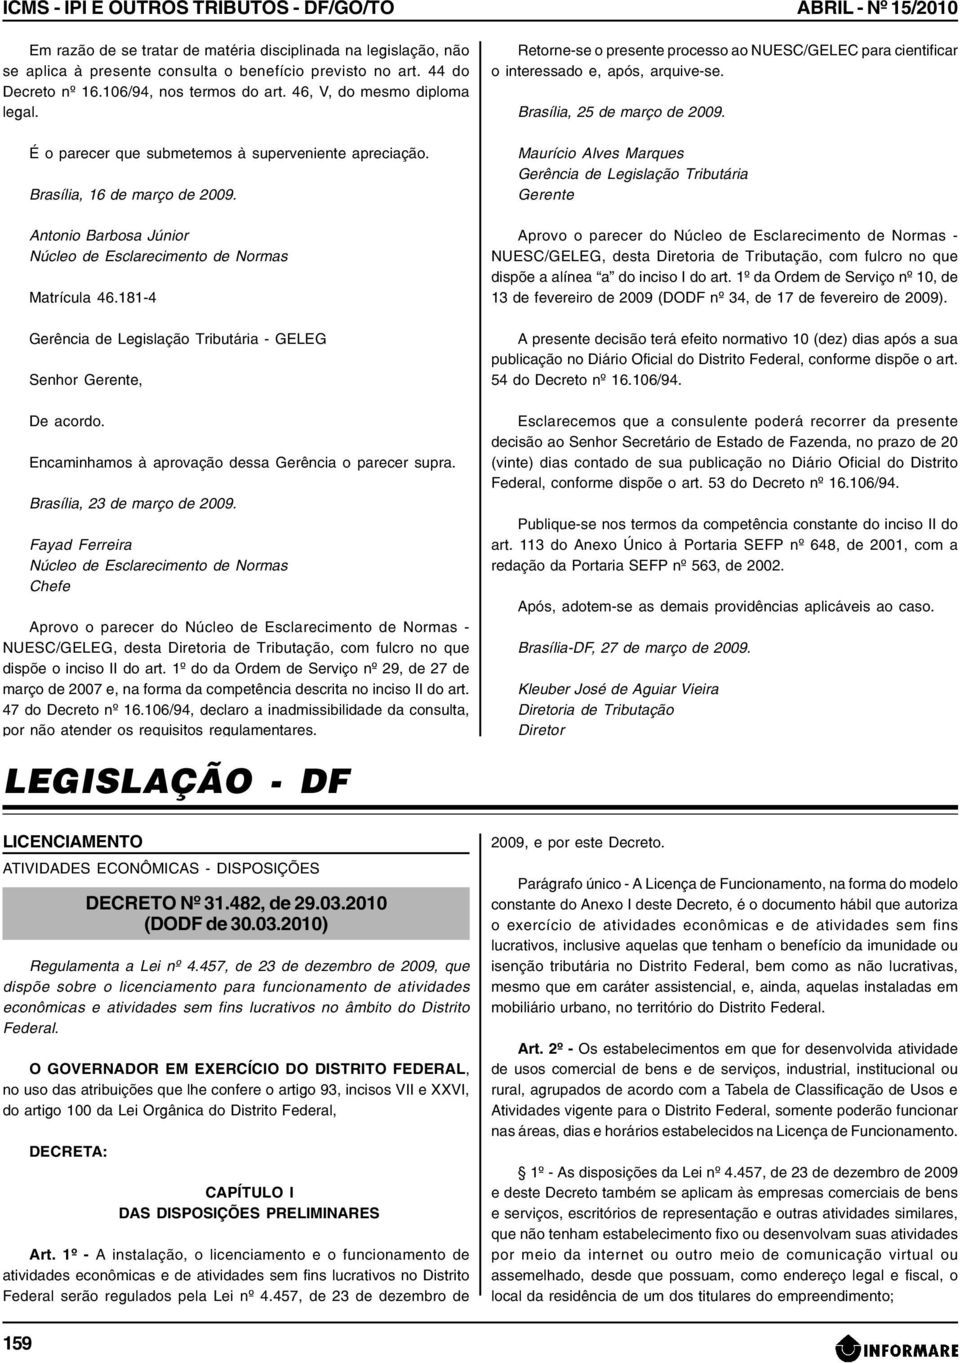 Antonio Barbosa Júnior Núcleo de Esclarecimento de Normas Matrícula 46.181-4 Gerência de Legislação Tributária - GELEG Senhor Gerente, De acordo.